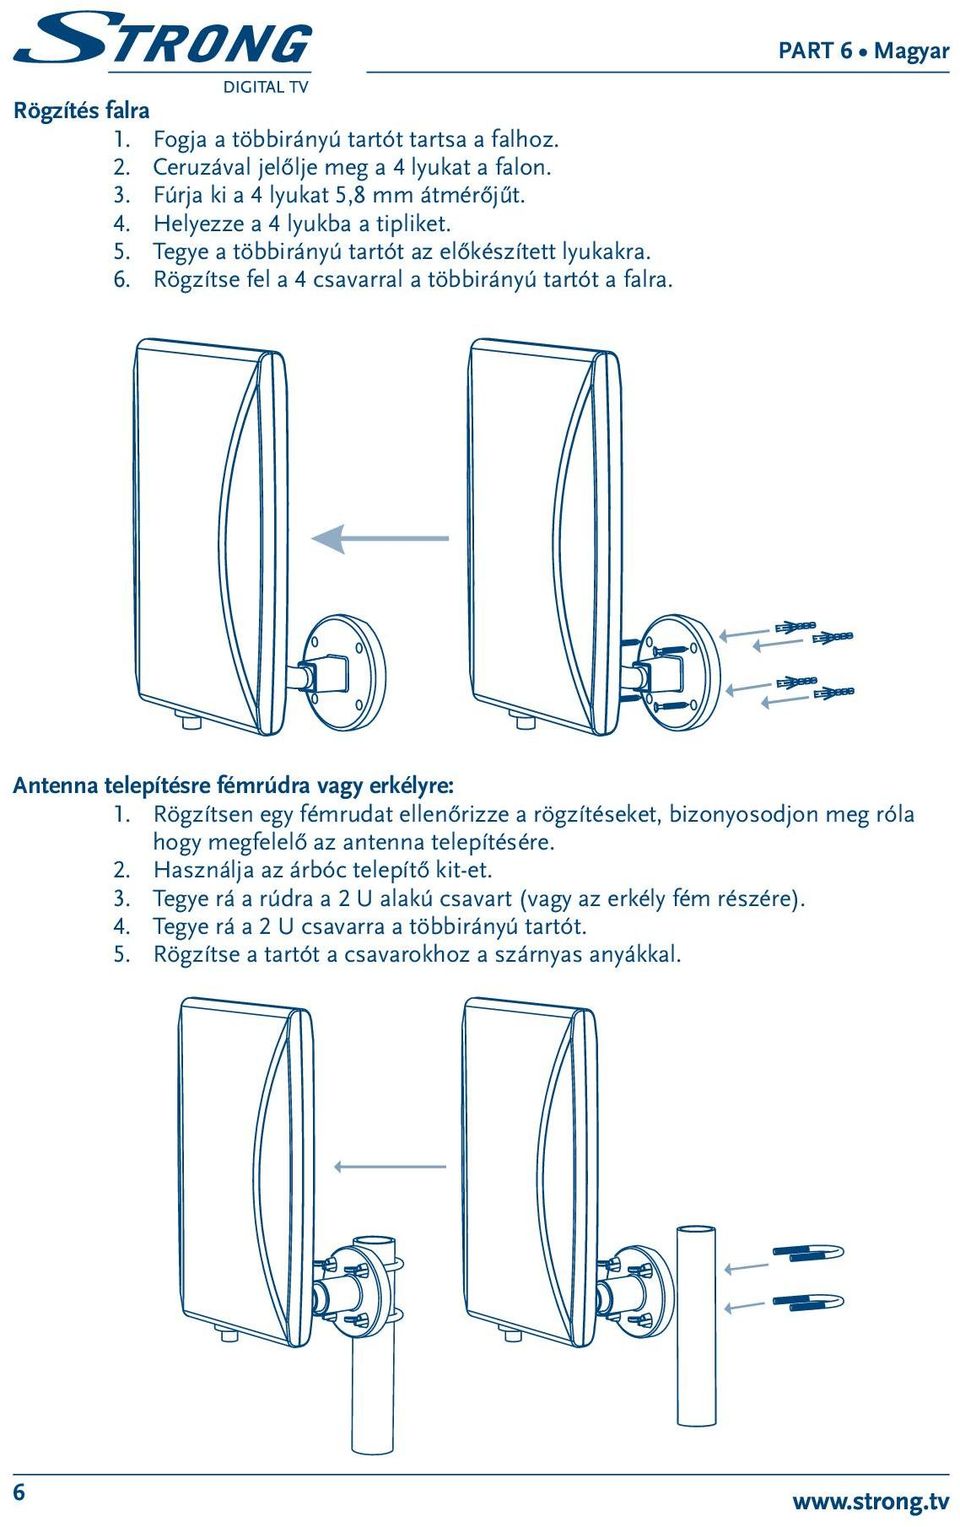 Rögzítsen egy fémrudat ellenőrizze a rögzítéseket, bizonyosodjon meg róla hogy megfelelő az antenna telepítésére. 2. Használja az árbóc telepítő kit-et. 3.